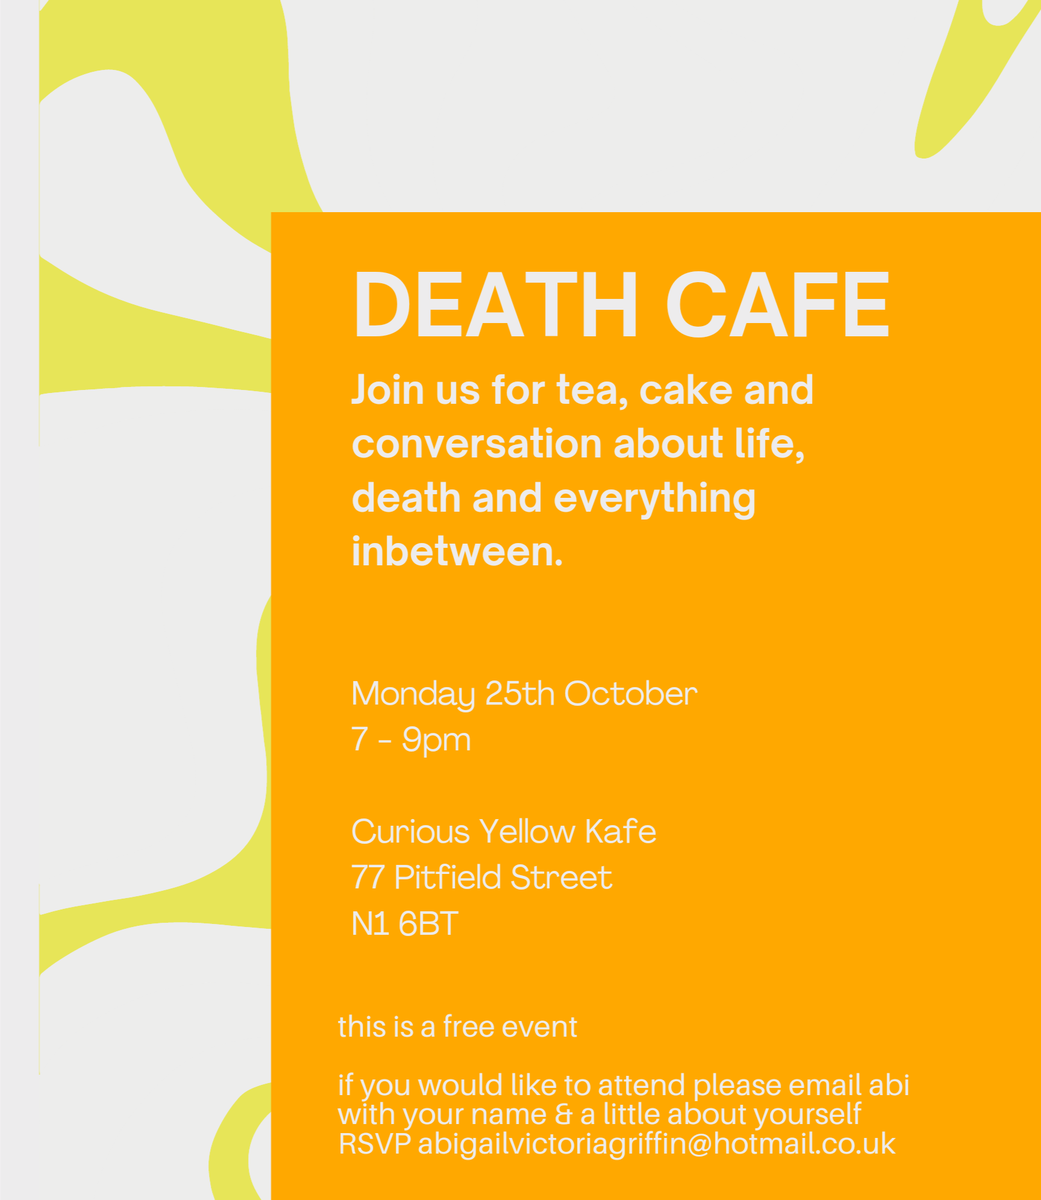 Death Cafe Hoxton London